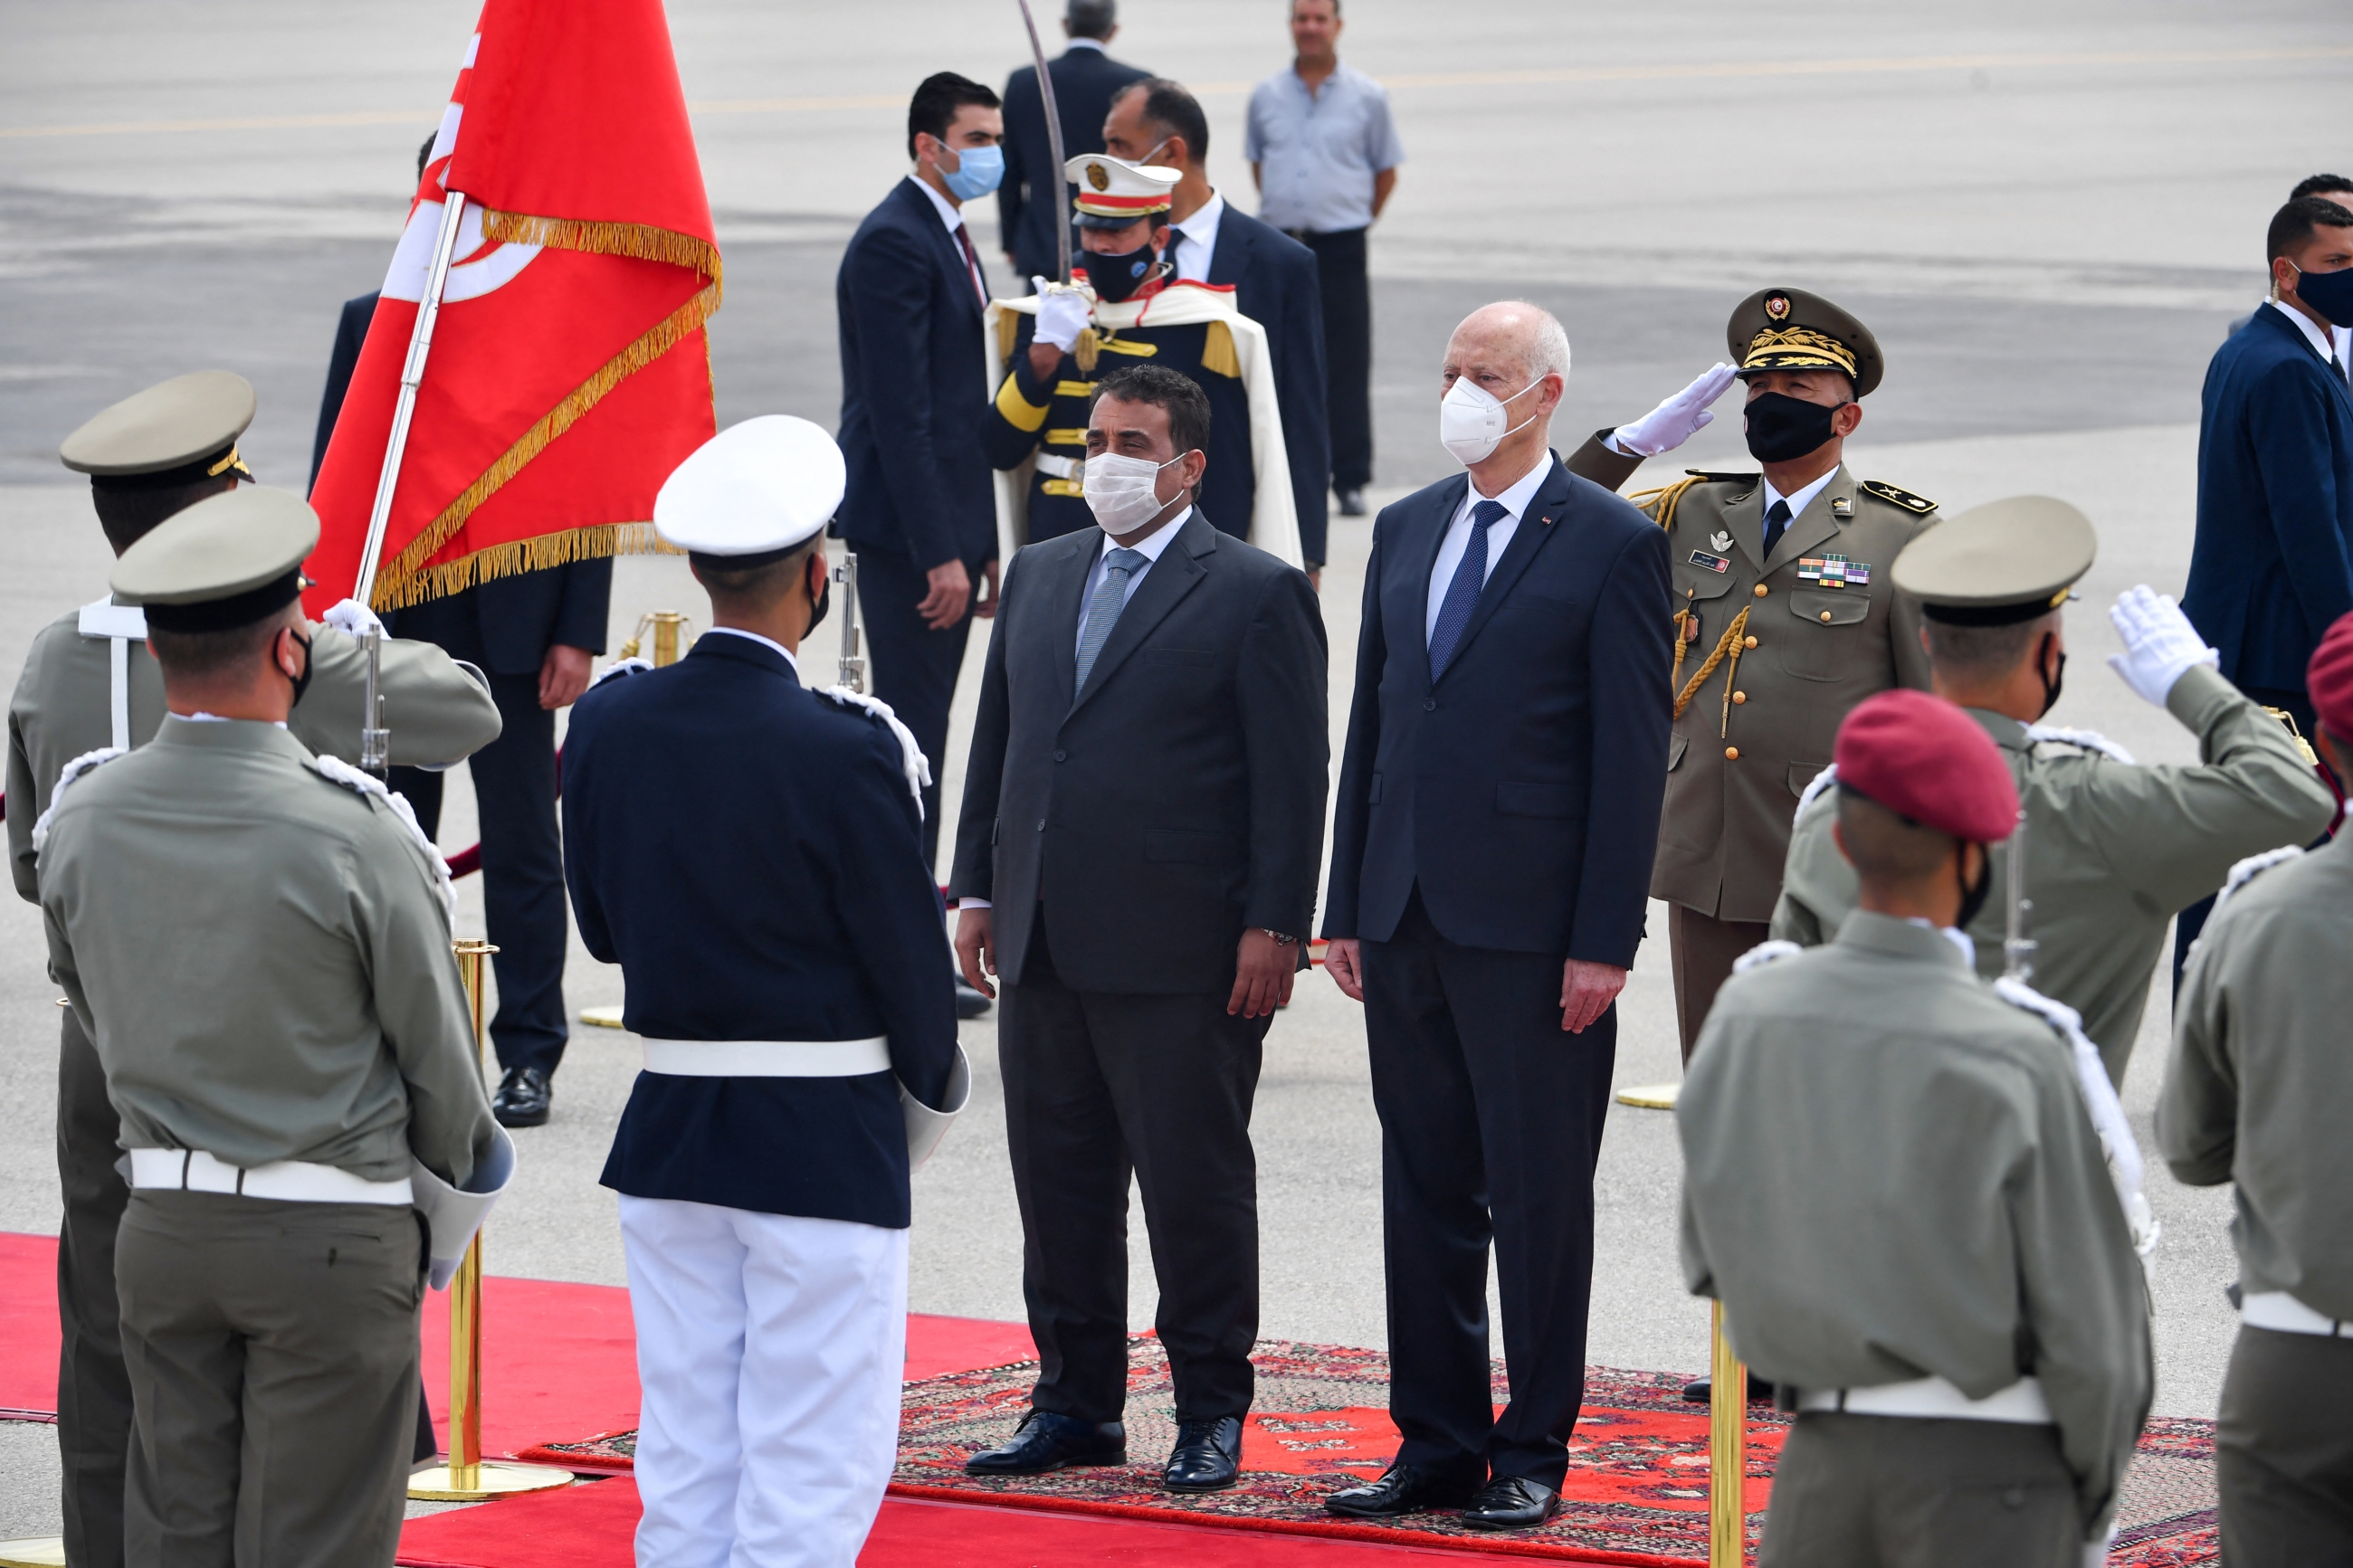 Le président tunisien Kais Saied (à droite) reçoit le président du Conseil présidentiel libyen Mohamed el-Menfi (à gauche) à son arrivée à l’aéroport de Tunis, le 29 mai 2021 (AFP)